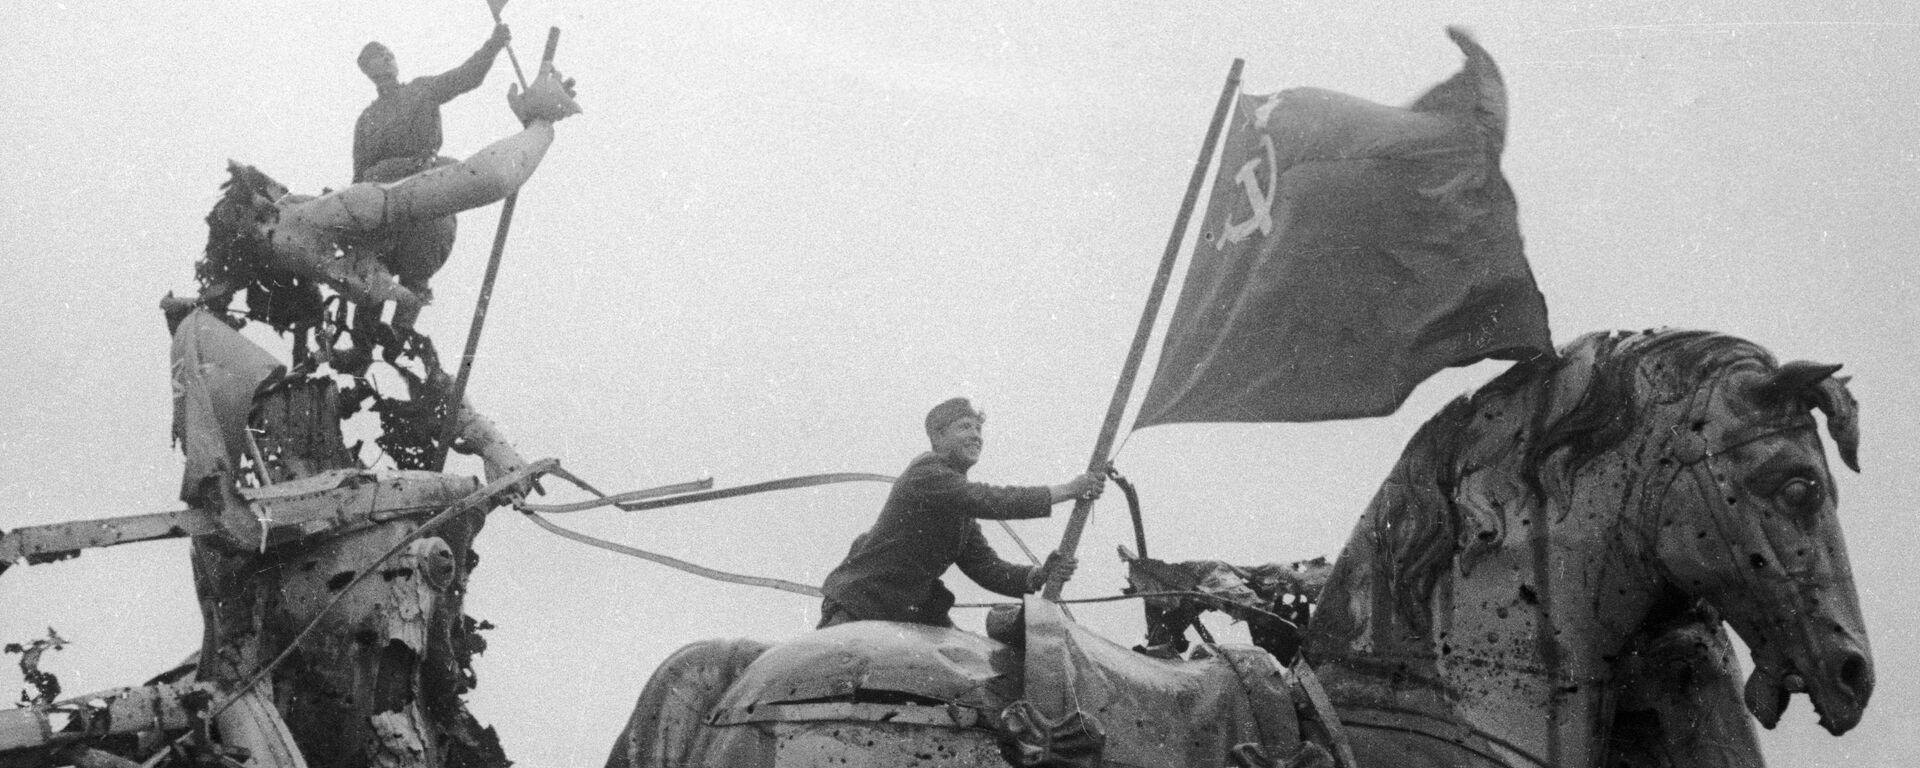 Солдаты водружают советские знамена над Бранденбургскими воротами. - Sputnik Узбекистан, 1920, 10.05.2020